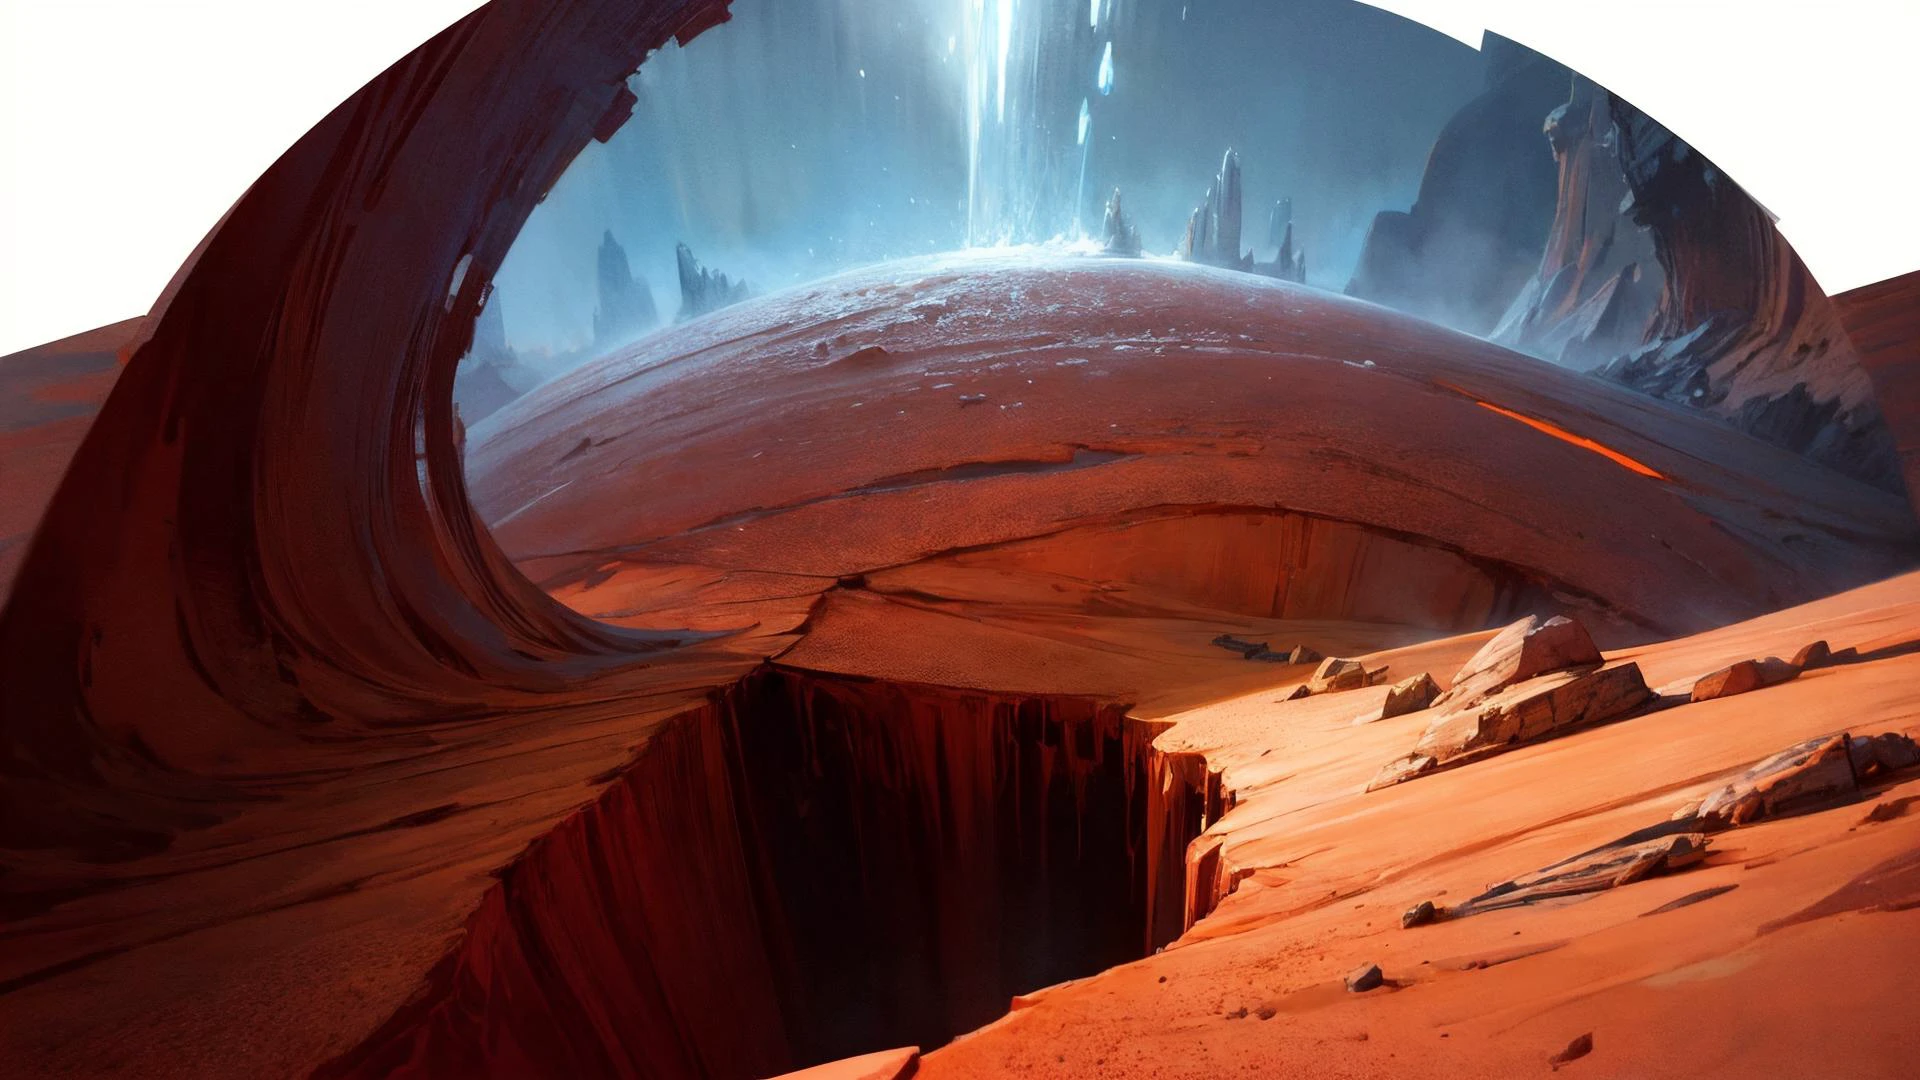 火星冰峡谷的精美油画: 火星上的深峡谷, 冰层和红色尘埃形成鲜明对比., 鲜艳的色彩, 强劲的风格和史诗般的戏剧性, , 最好的质量, 最高质量, 复杂的细节, 超滤膜, 遮挡环境, 逼真的阴影, Bastien Lecouffe Deharme 的艺术作品, 8千, 油画艺术, 8千 perfect quality, 书, 景深